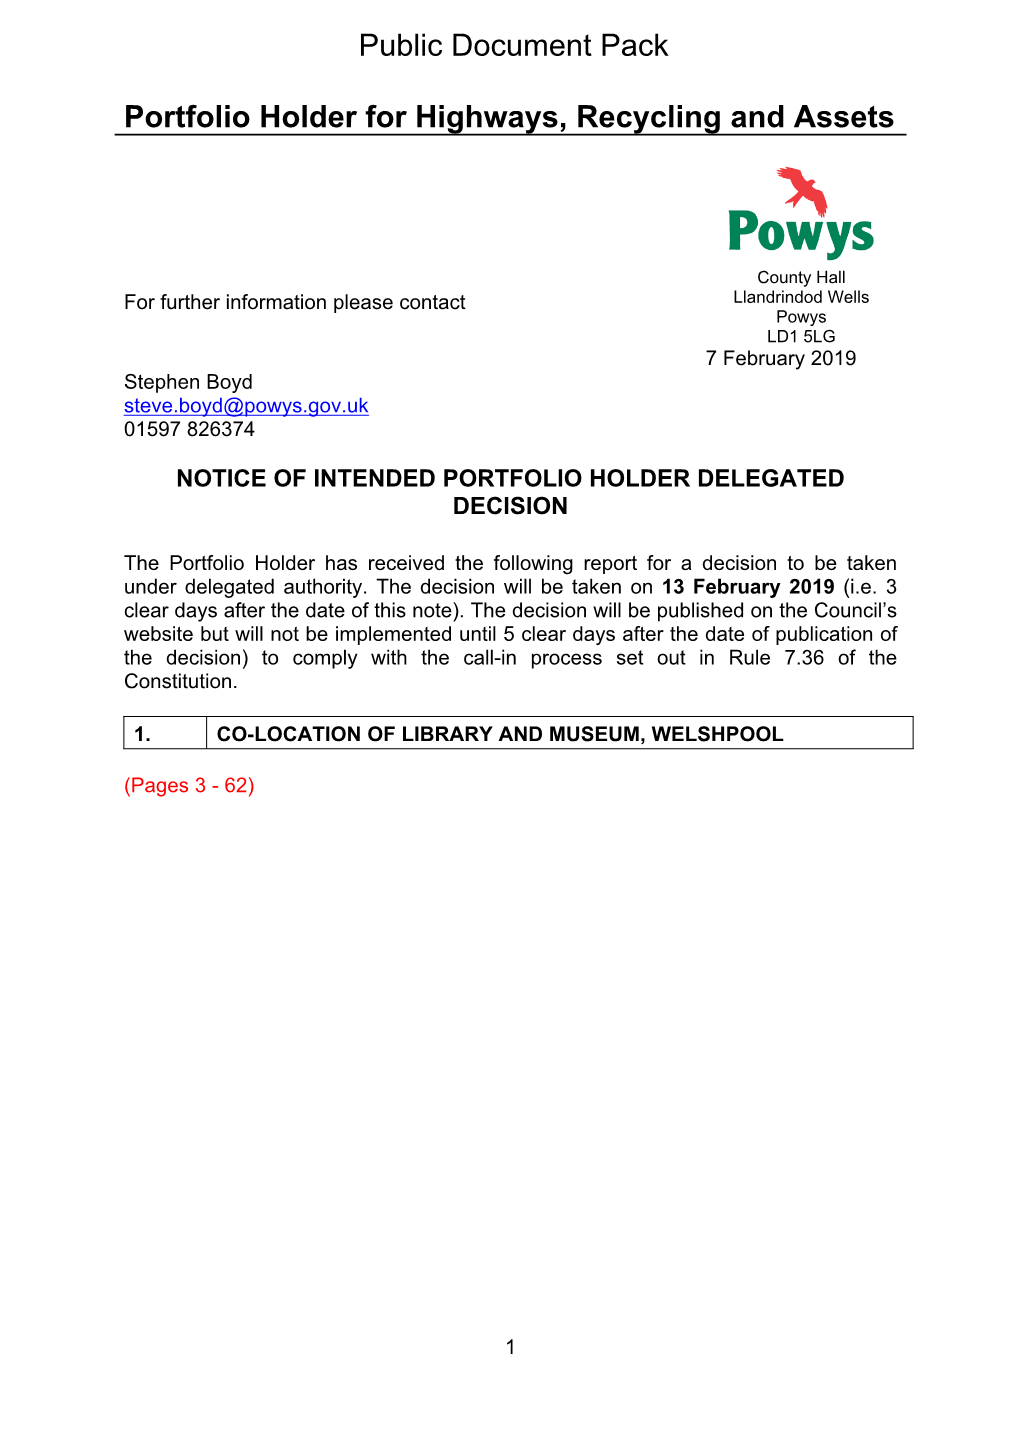 (Public Pack)Agenda Document for Portfolio Holder for Highways